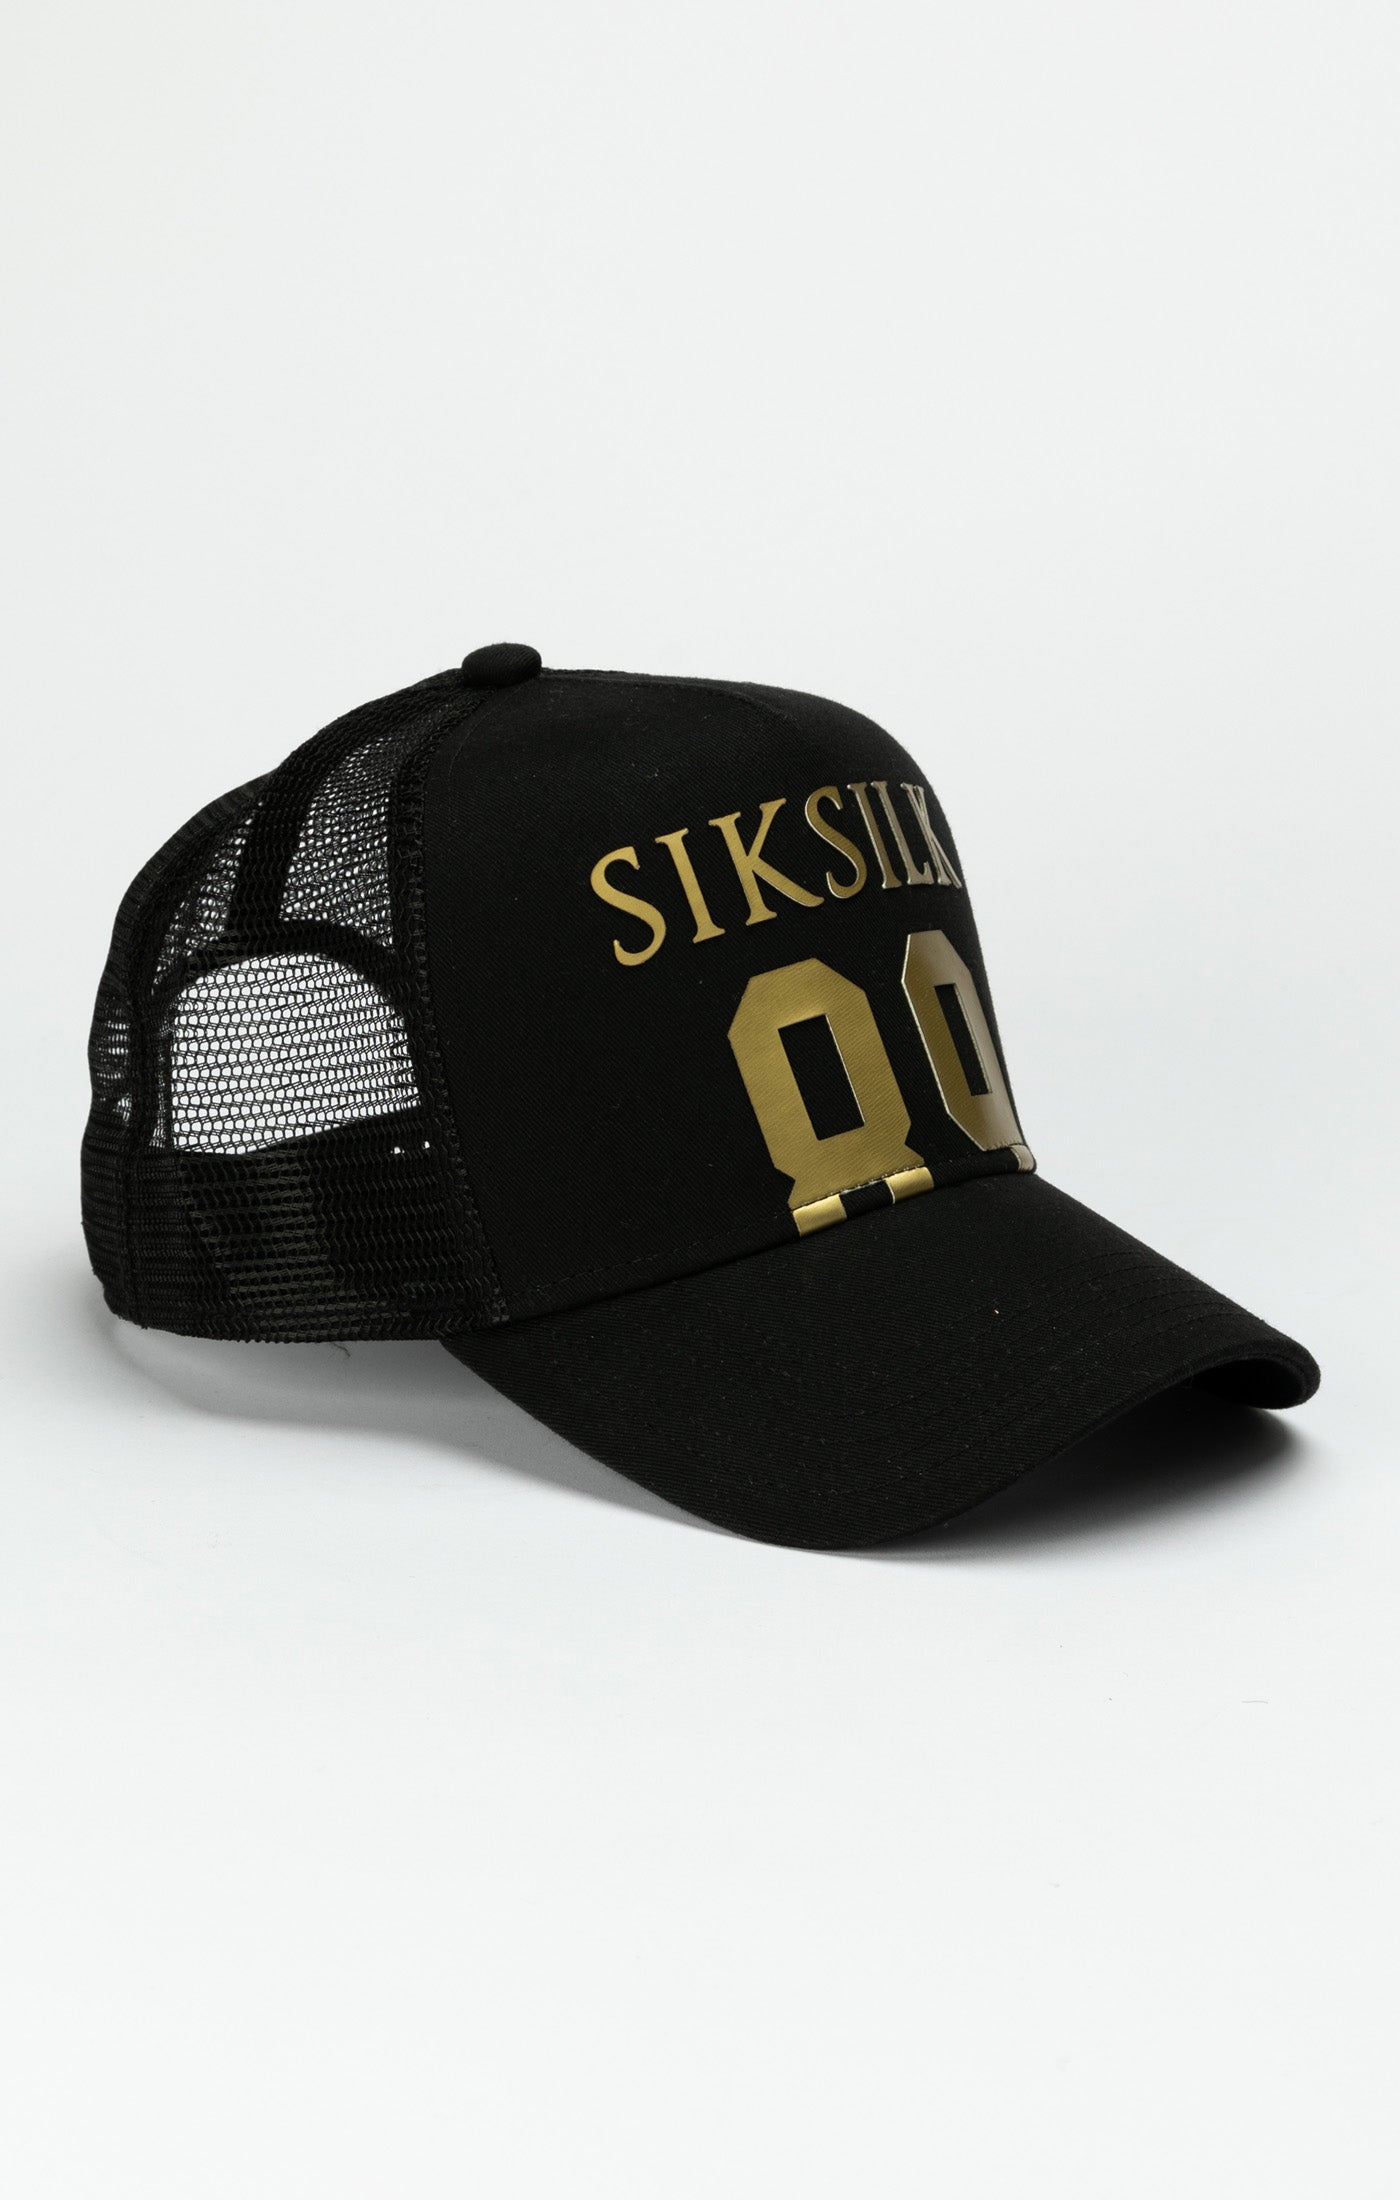 Siksilk - Black 89 Foam Mesh Trucker Cap - Stayin